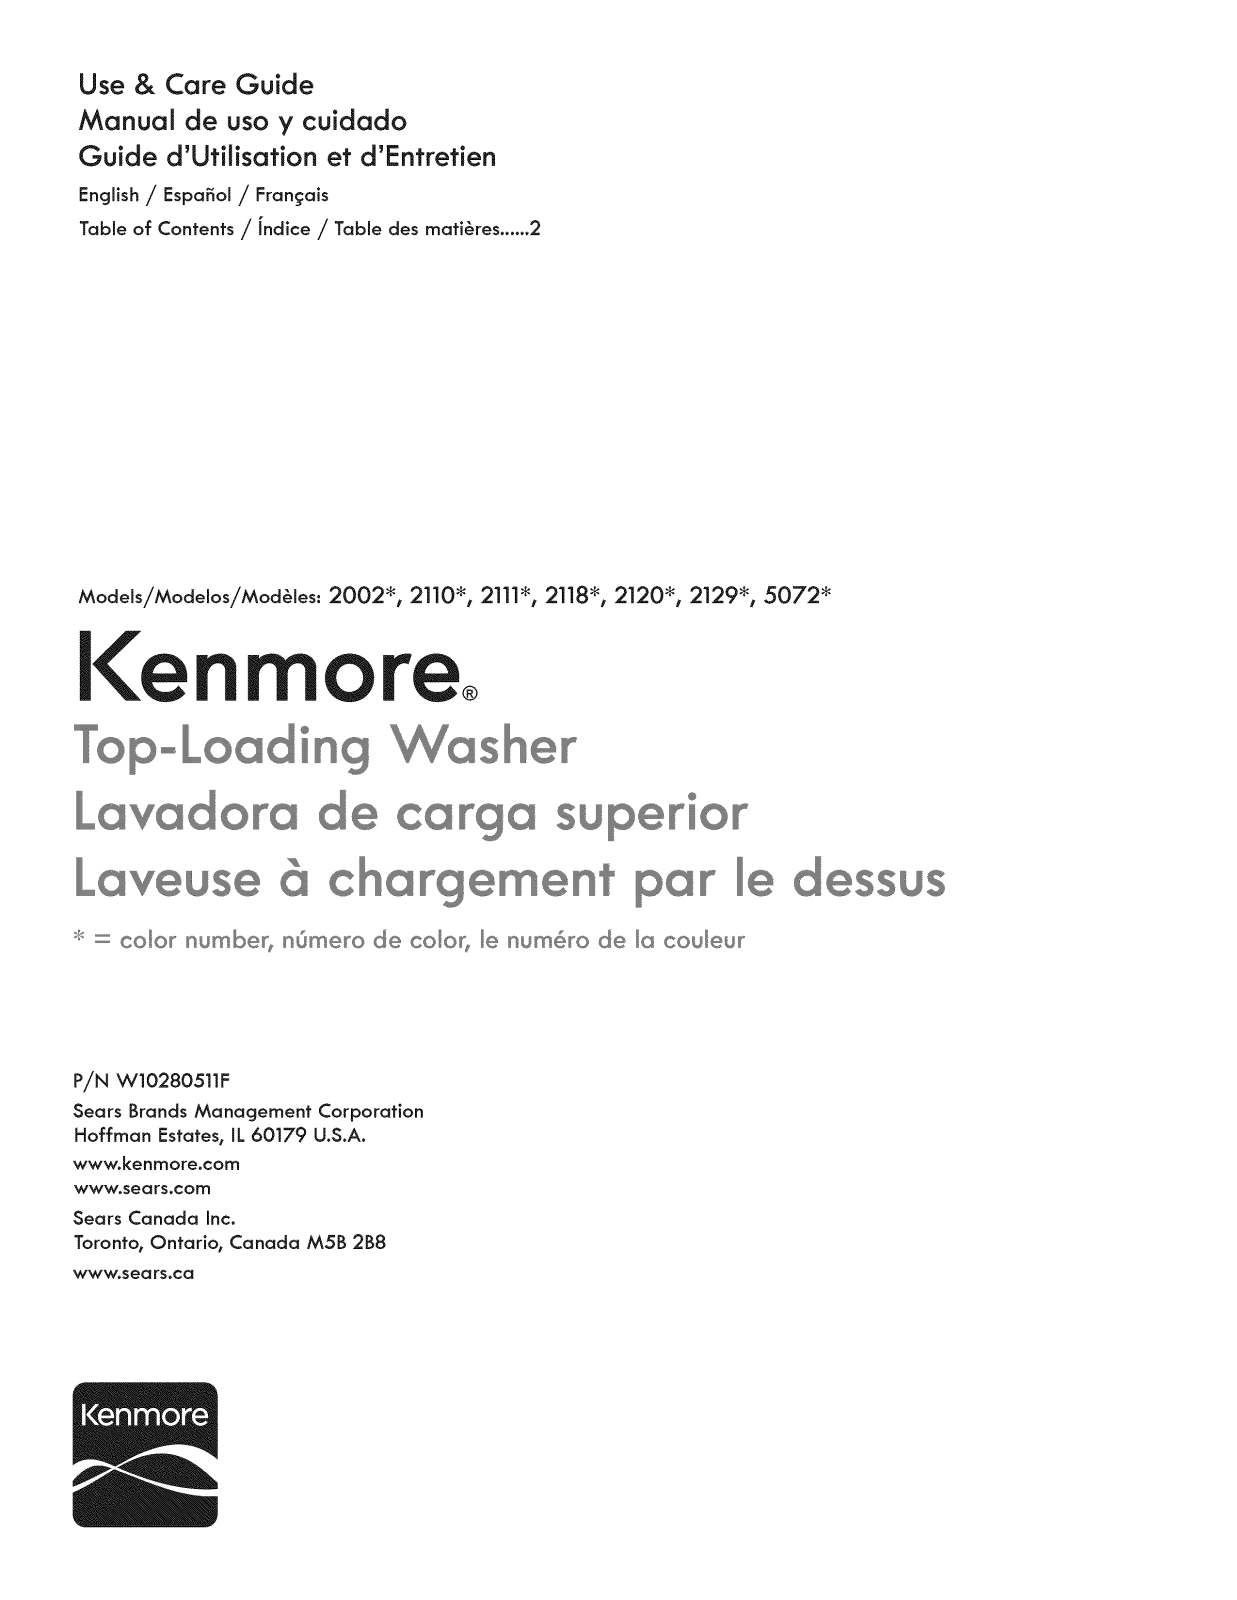 Kenmore 1105072012, 1105072011, 1105072010, 11021292013, 11021292012 Owner’s Manual